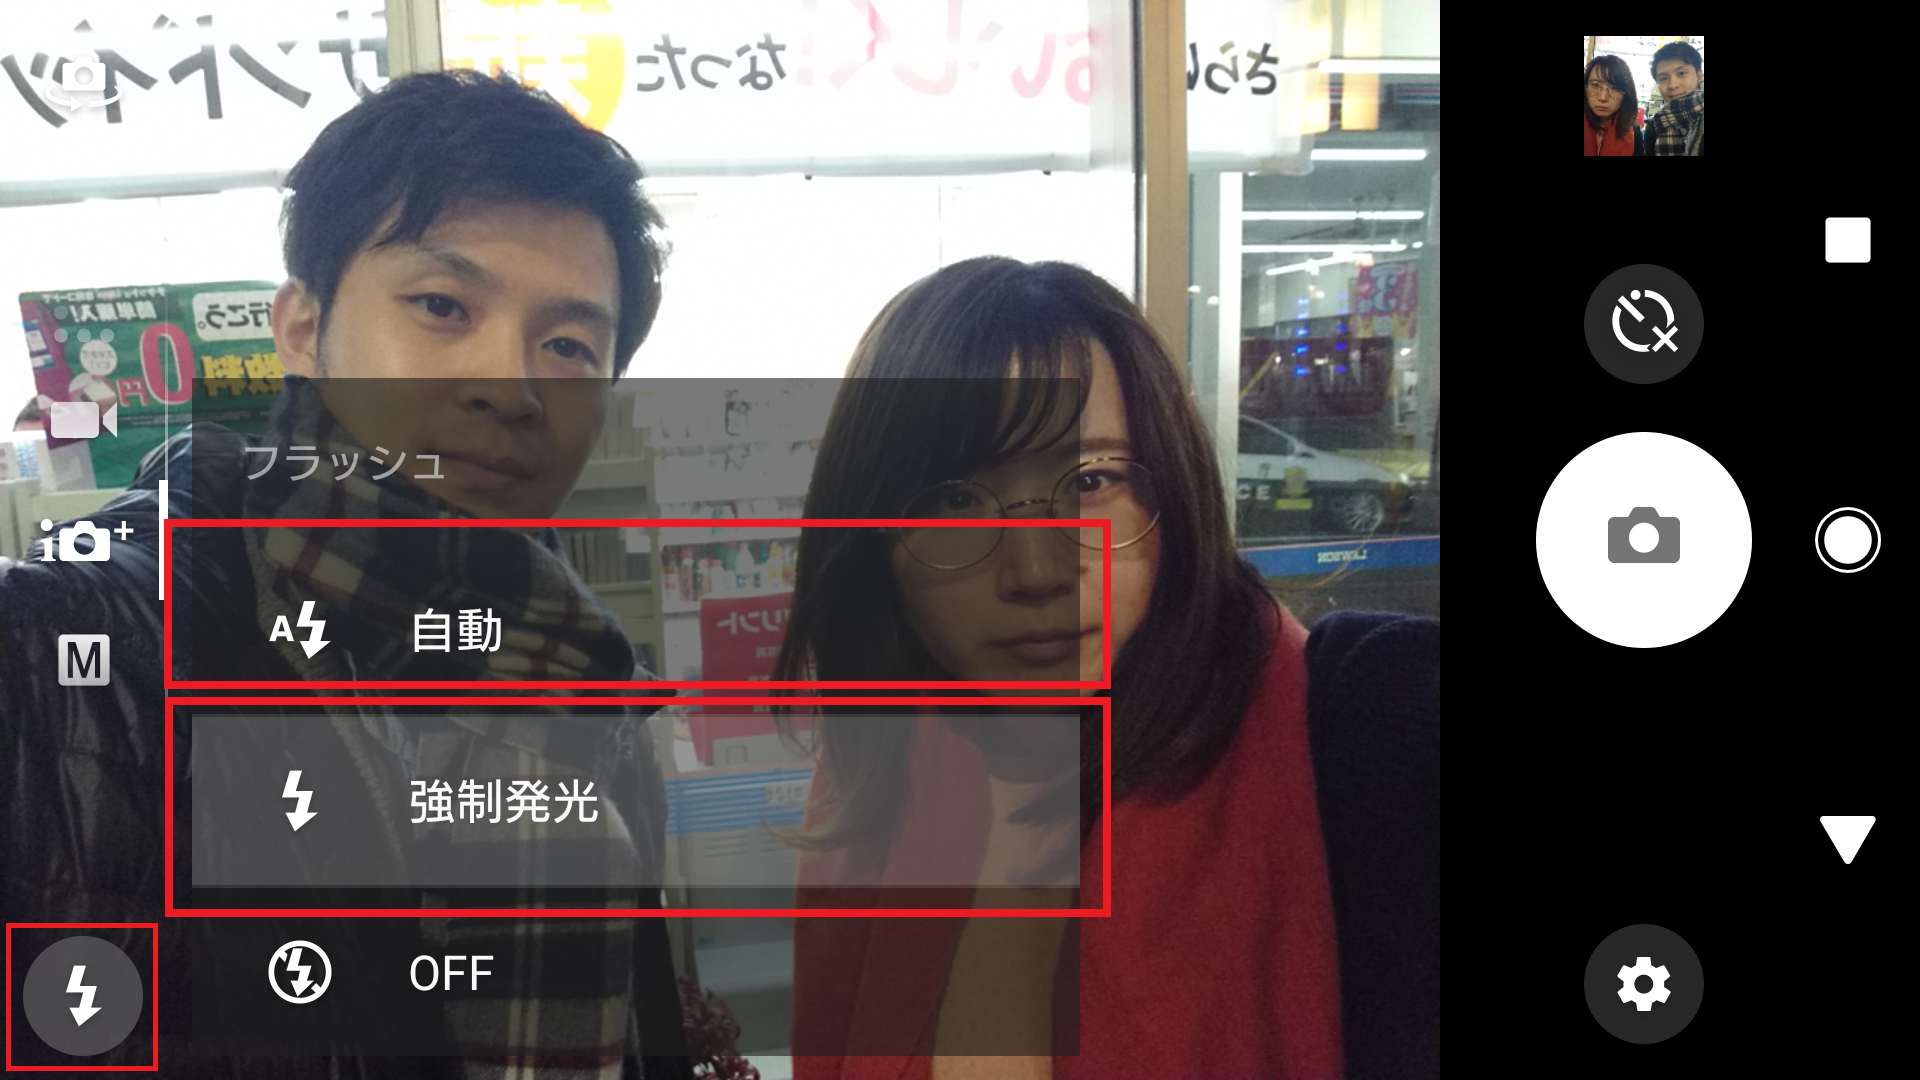 画面ピカッ Xperiaの ディスプレイフラッシュ で夜でも顔色良くセルフィー Xperia Tips Engadget 日本版